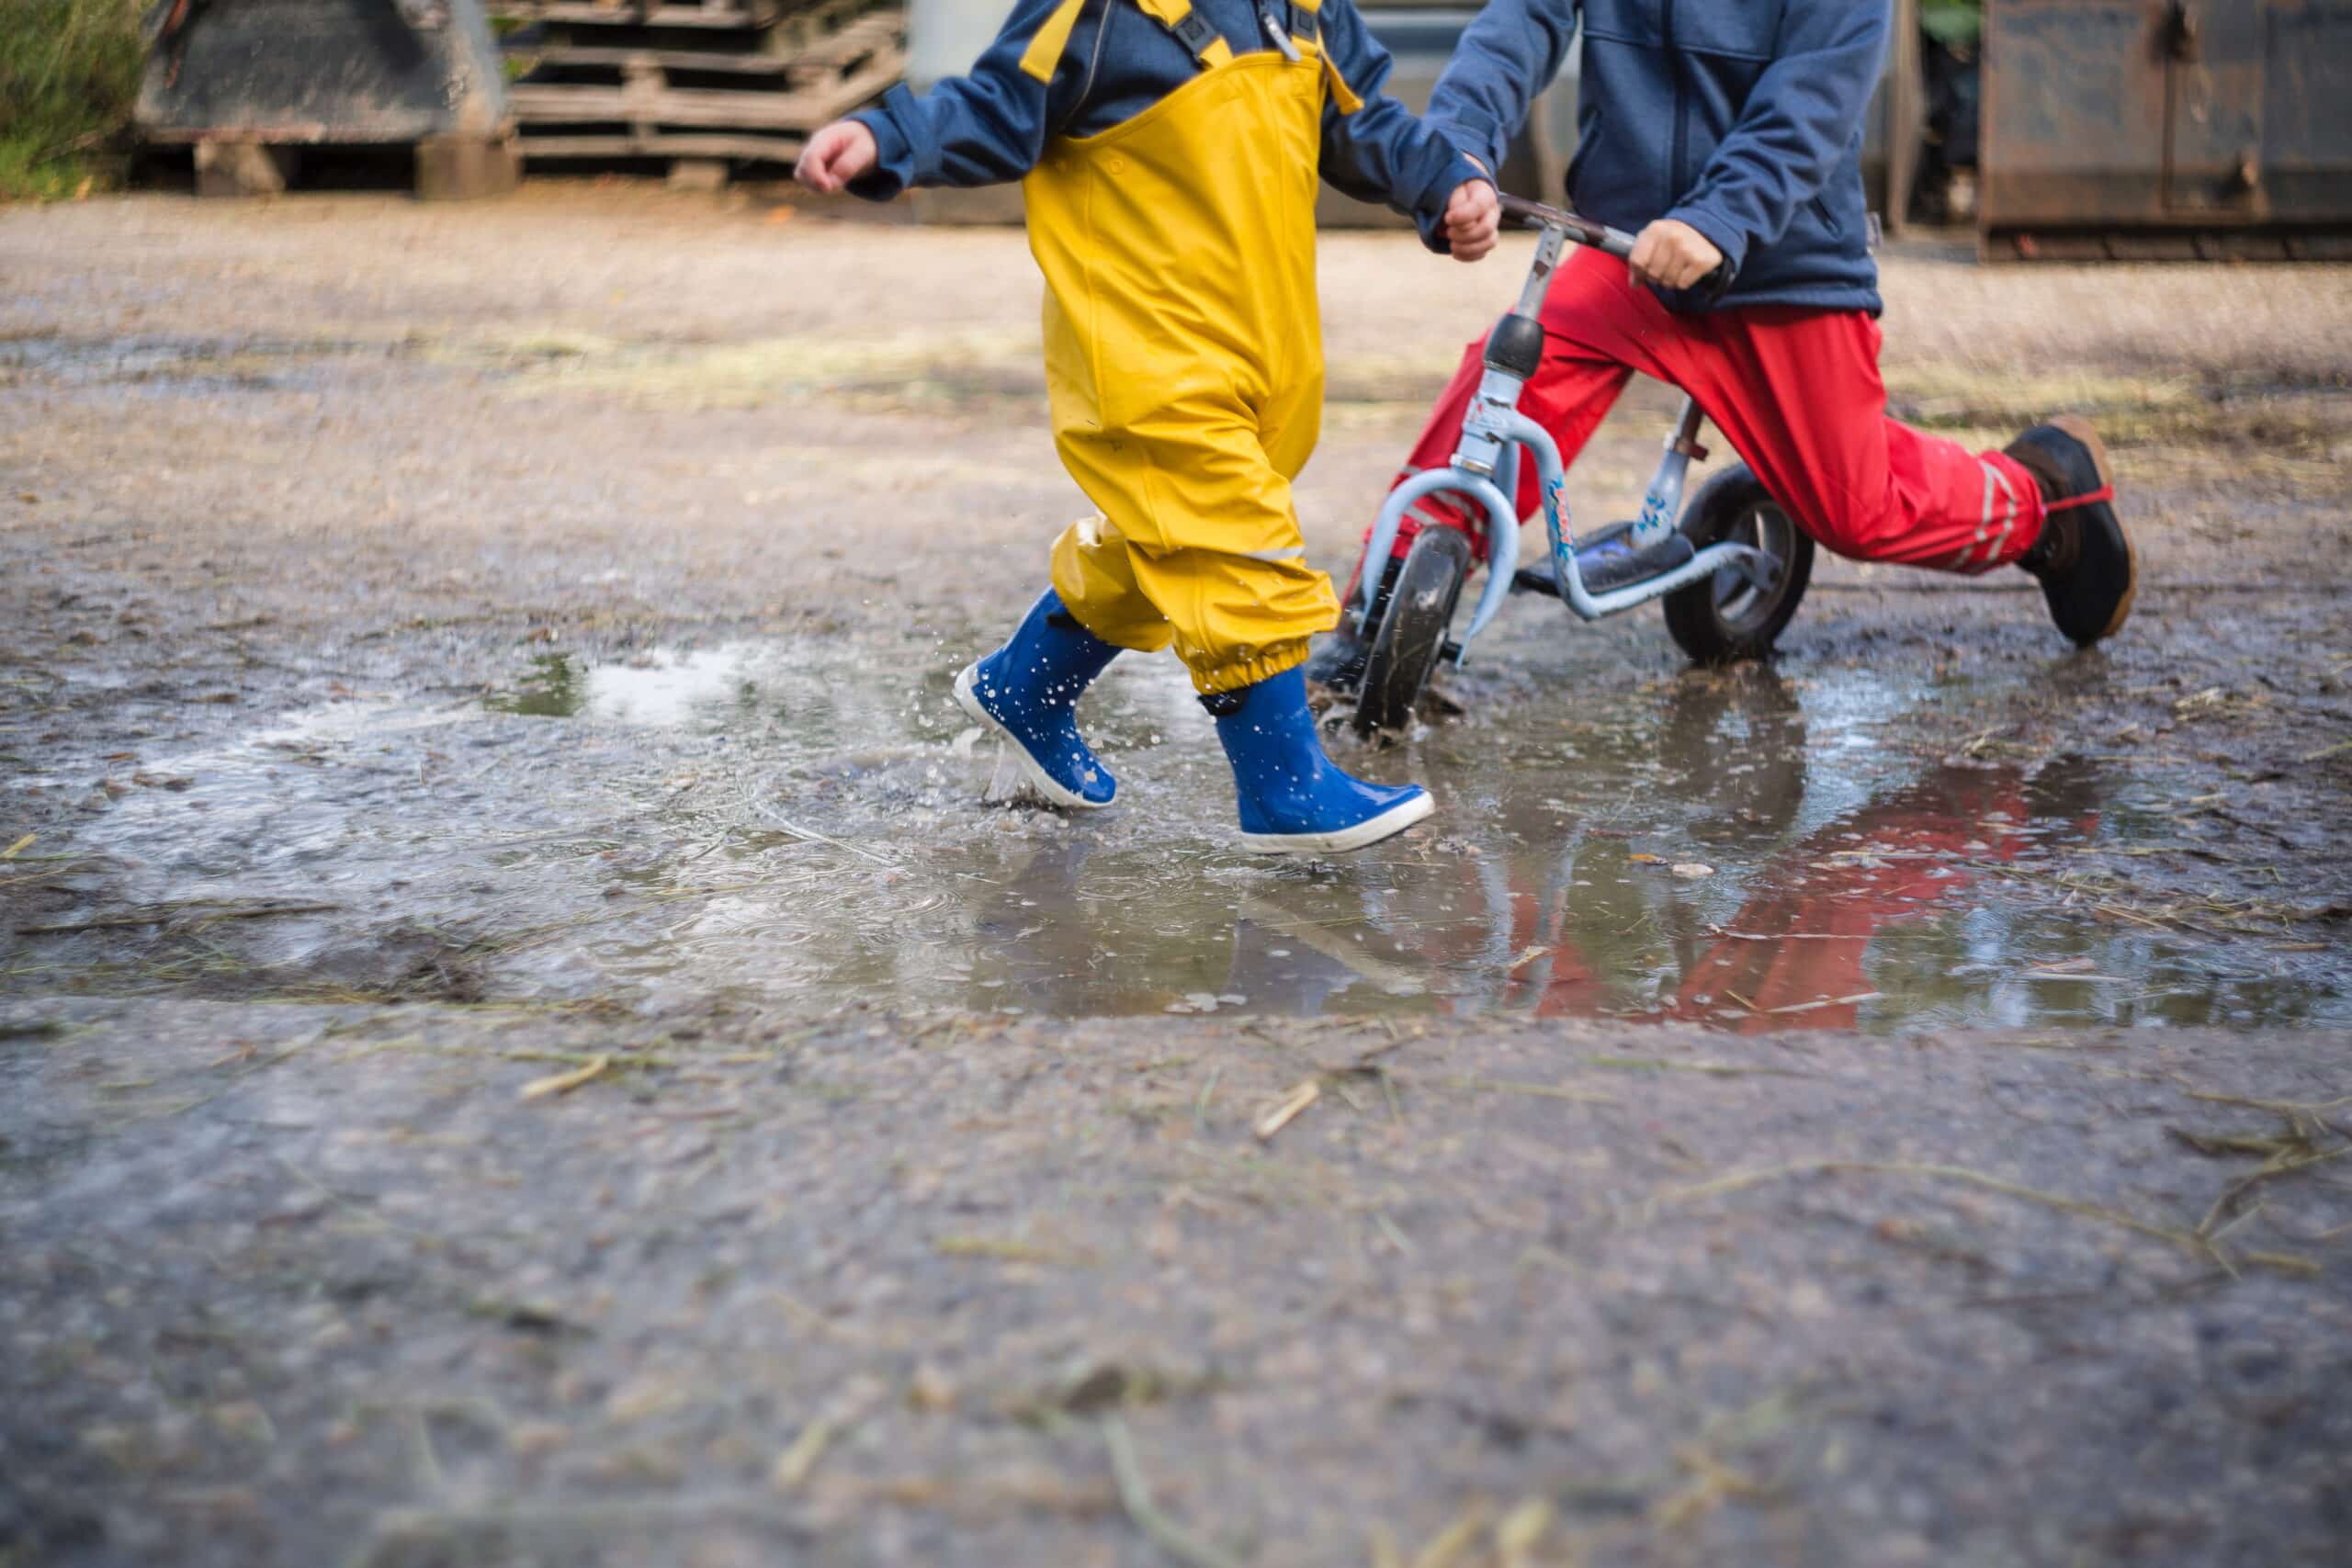 Plouă, lași copilul să se joace afară? Activități distractive de făcut pe timp ploios | Demamici.ro